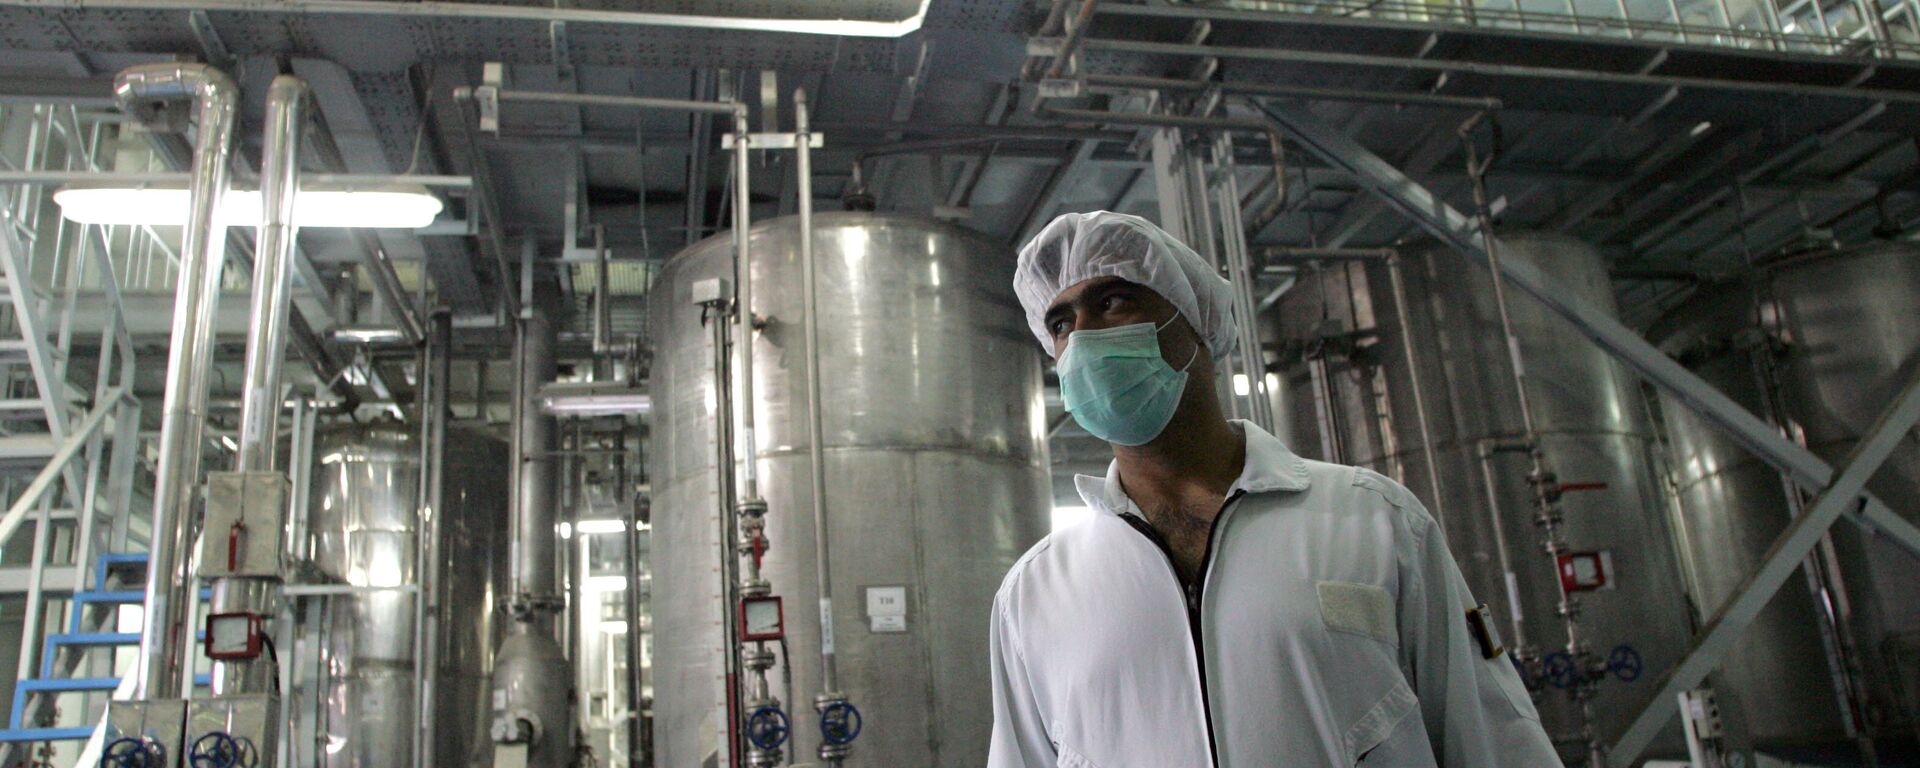 Un tecnólogo iraní en la planta de la conversión nuclear de Isfahan - Sputnik Mundo, 1920, 06.07.2021